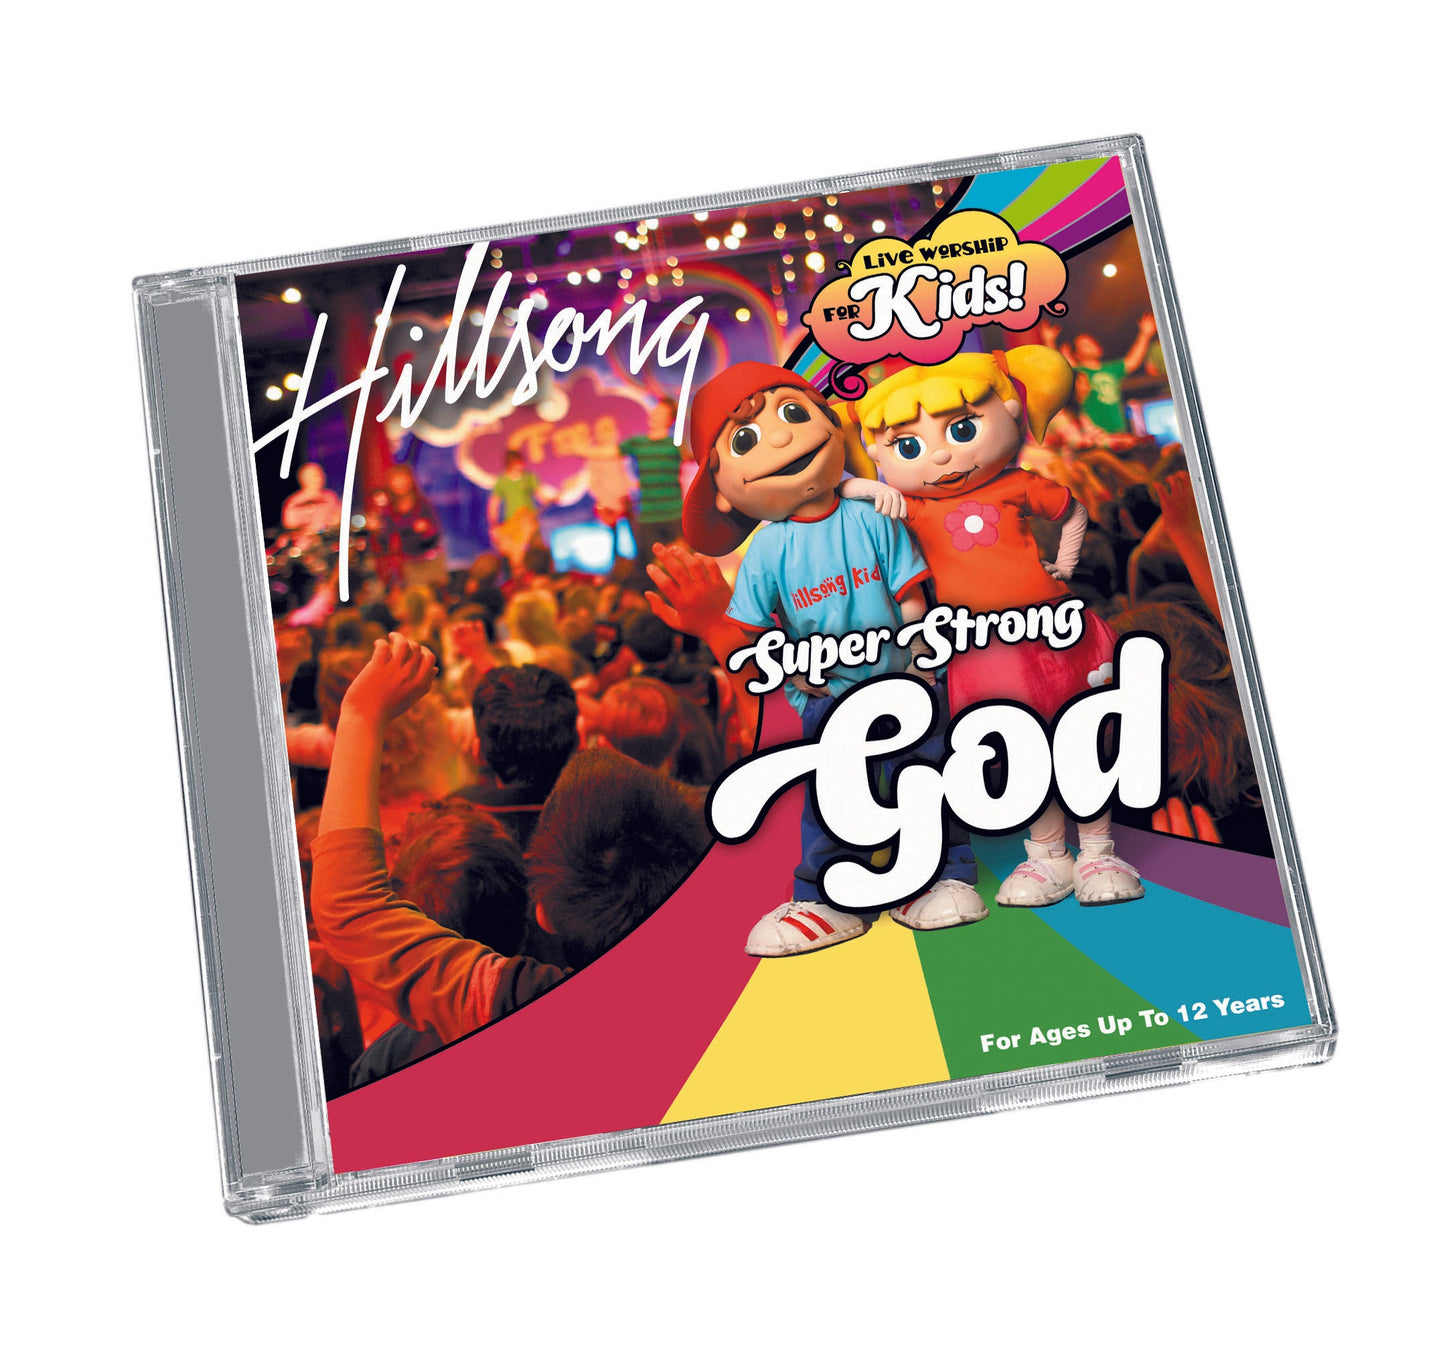 Super Strong God Music CD